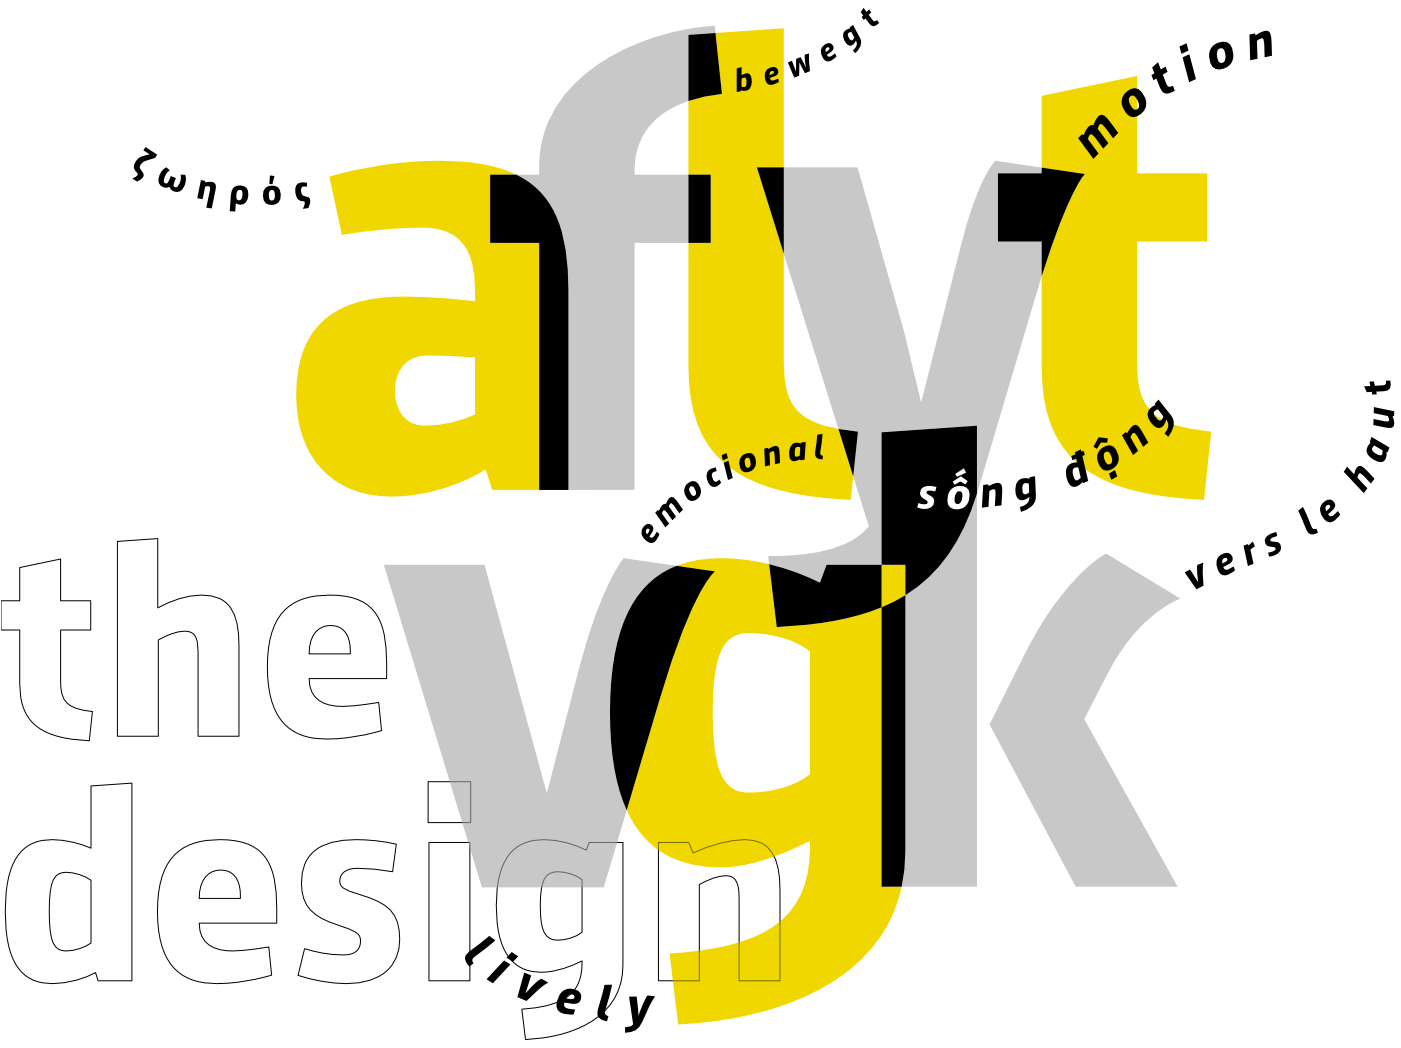 August Sans typeface - the design